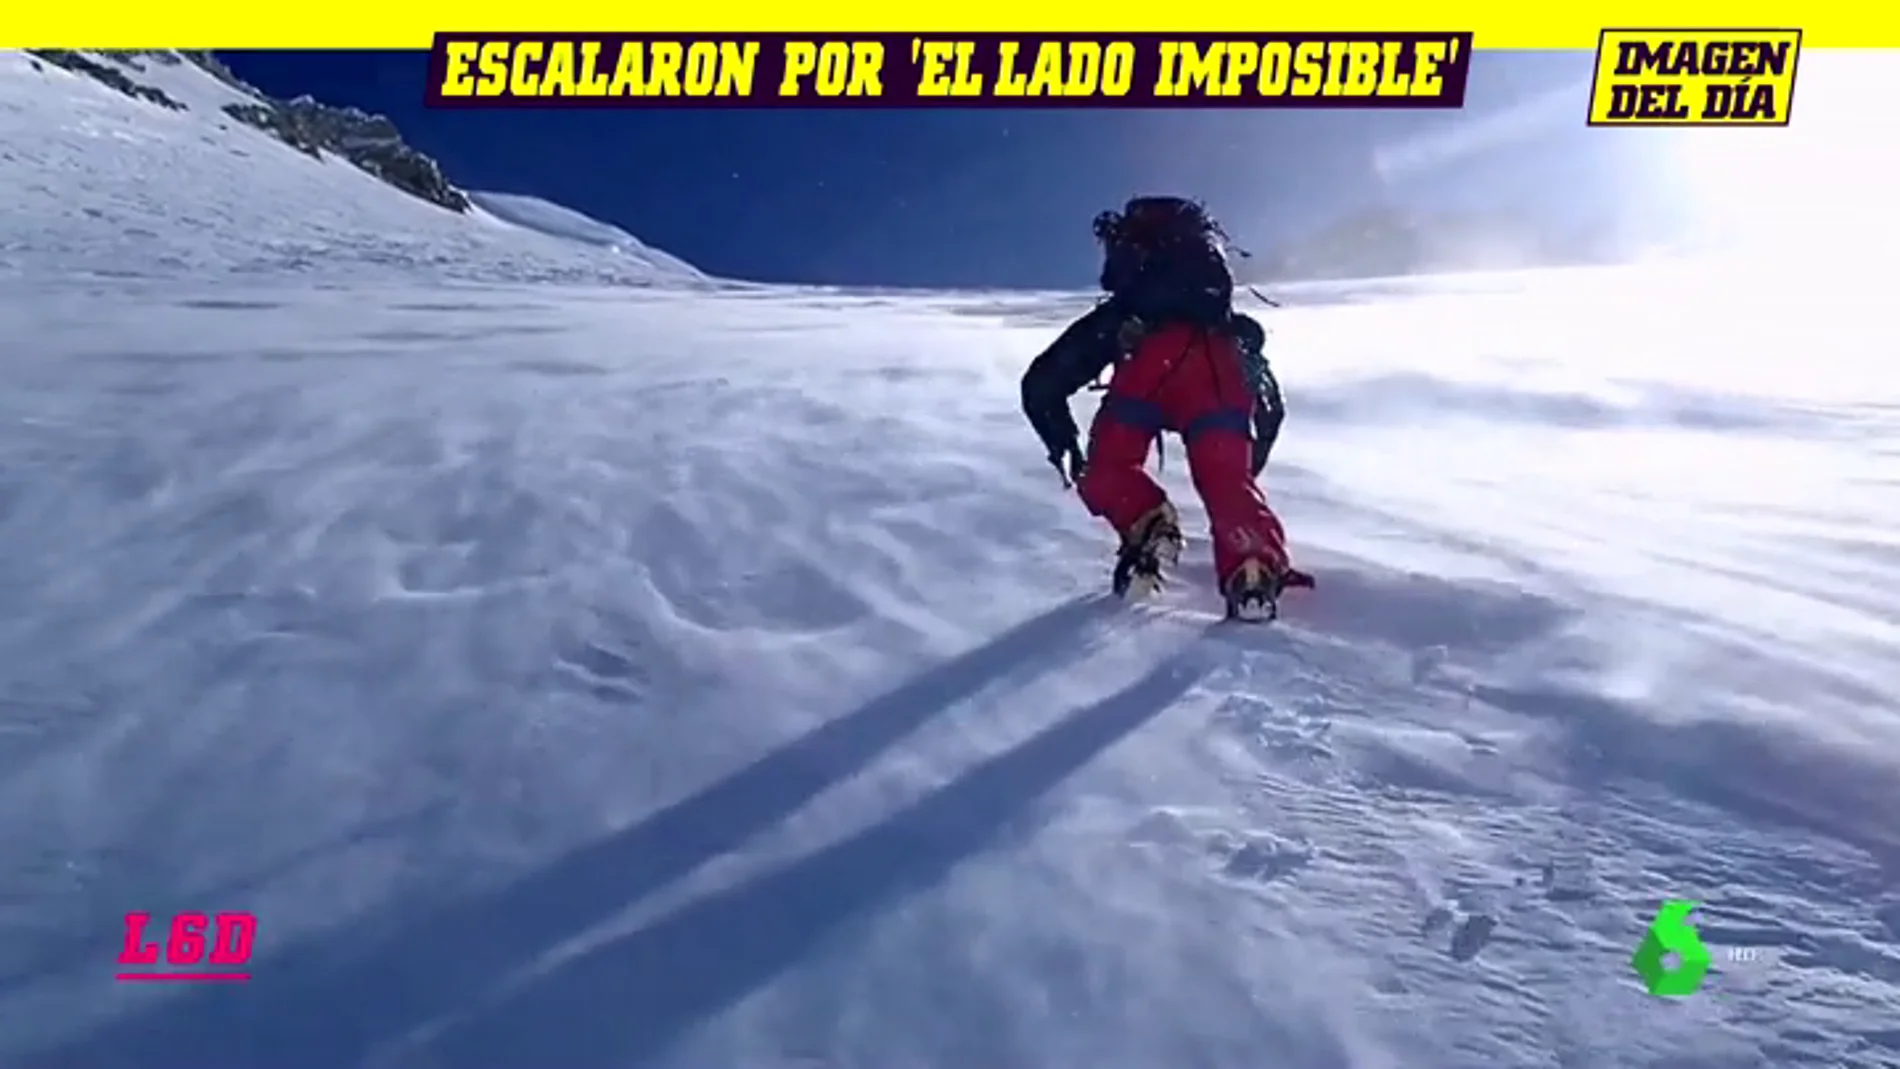 "": la épica hazaña de dos escaladores españoles en el Monte Denali de Alaska